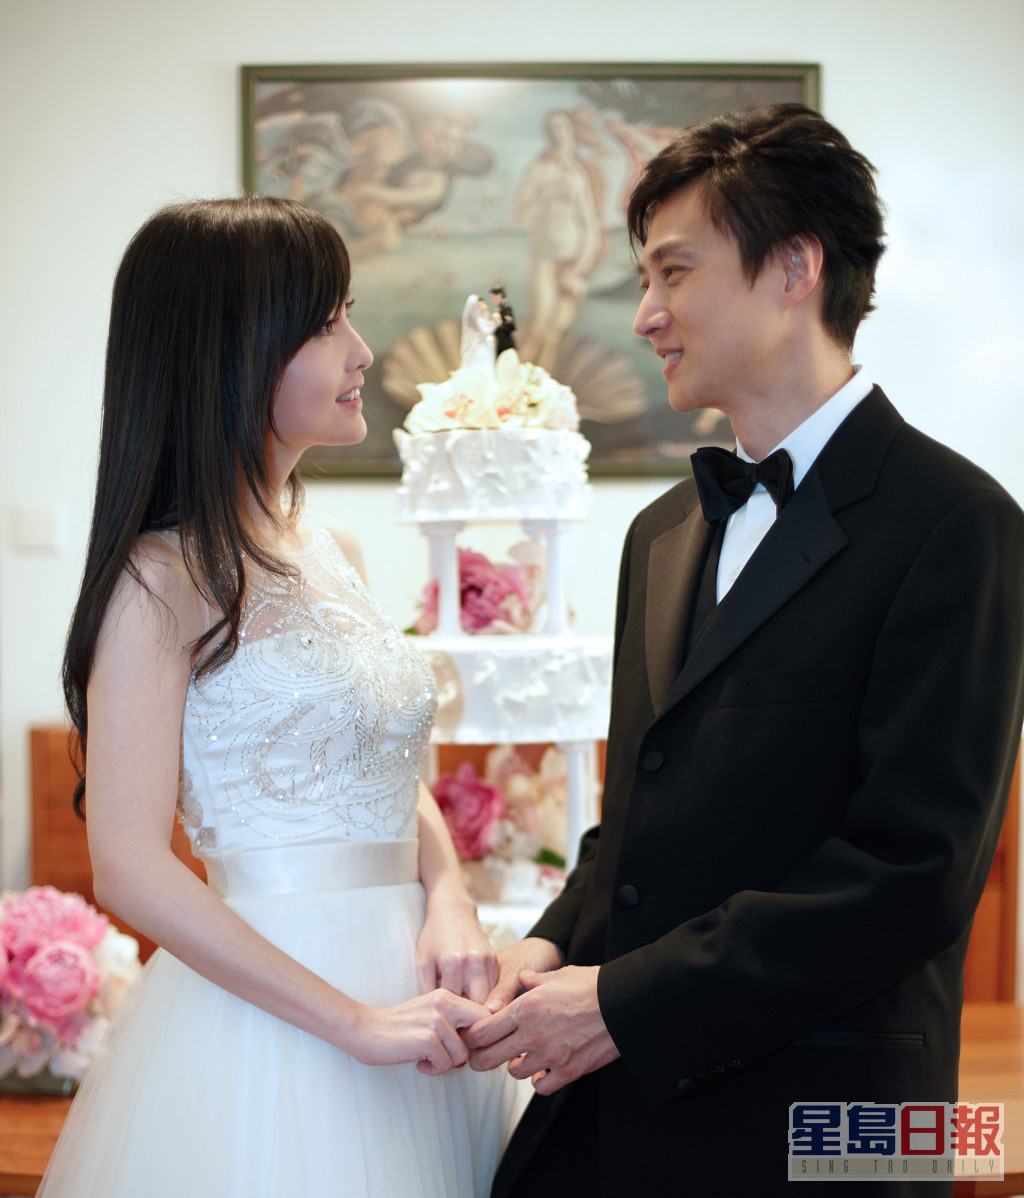 最轟動的一次是在2008年被拍到在蘭桂坊激咀城大內地生張茆，周慧敏更宣佈分手，不過13日後兩人極速復合宣佈結婚。